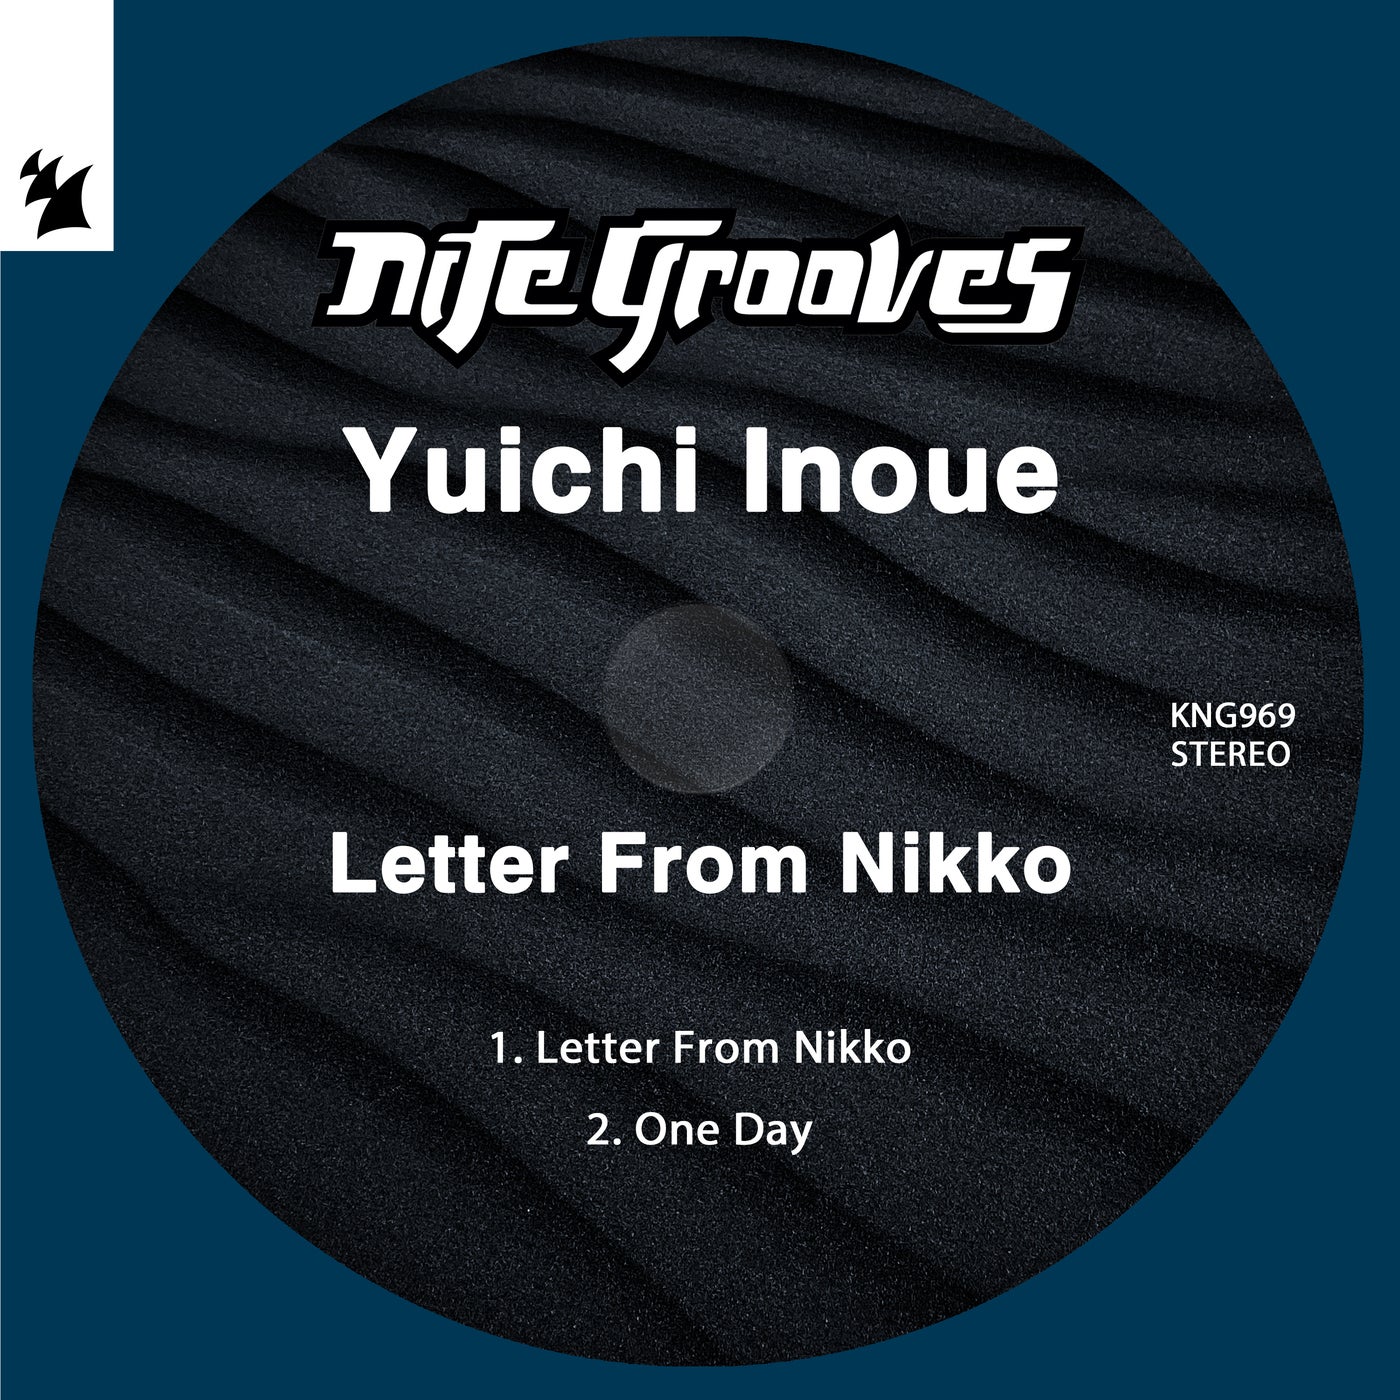 Letter From Nikko